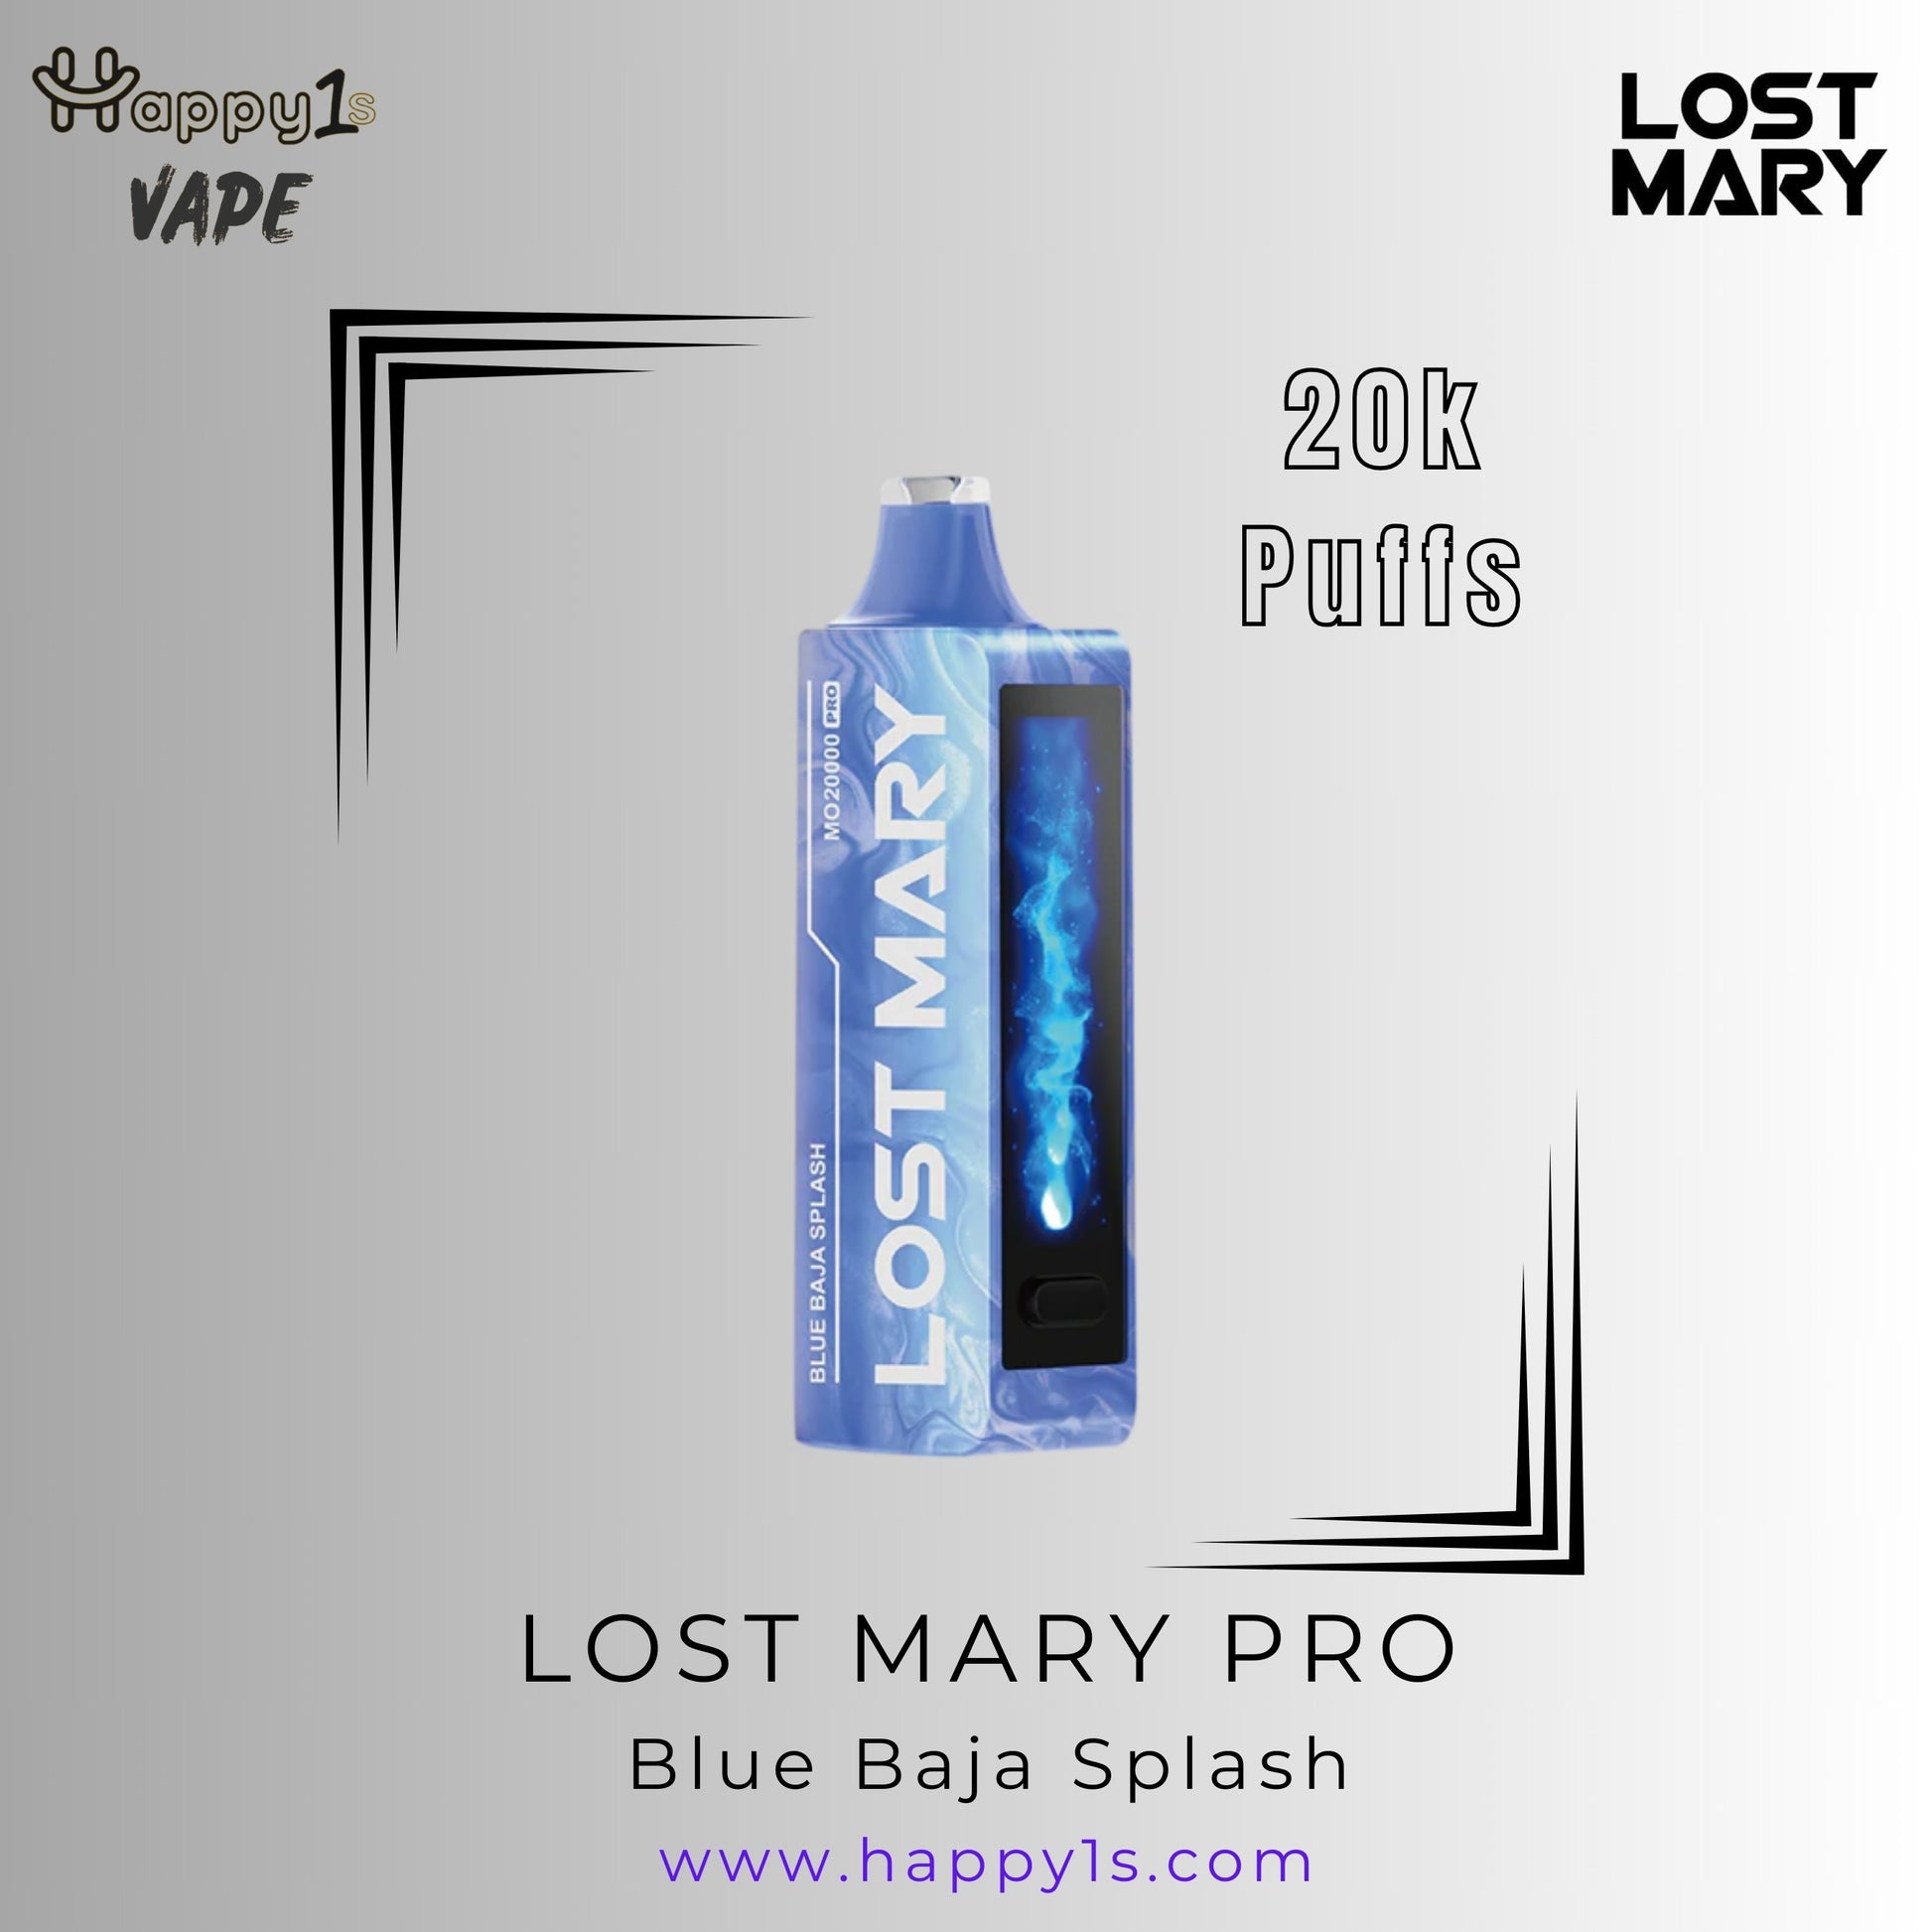 LOST MARY MT15000 TURBO - BLUE BAJA SPLASH